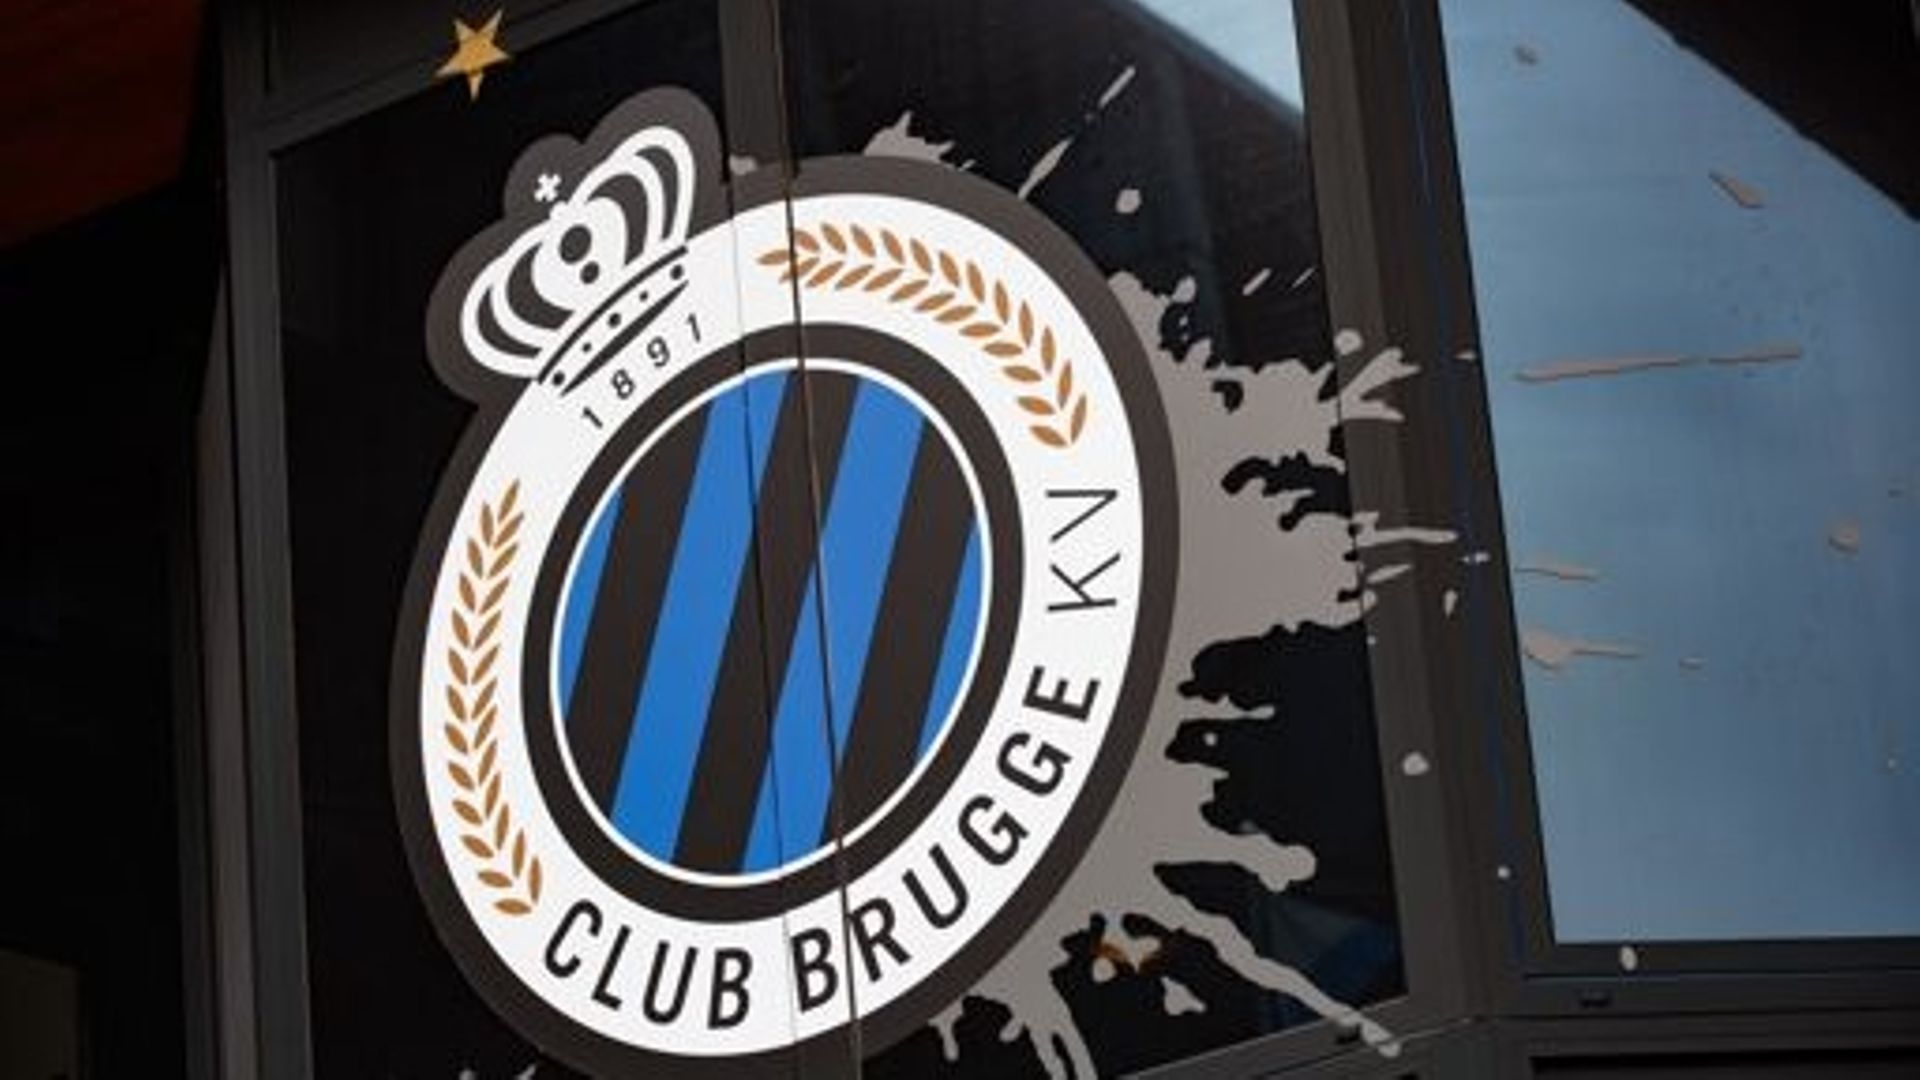  Le Club Bruges attire le gardien anglais Josef Bursik.